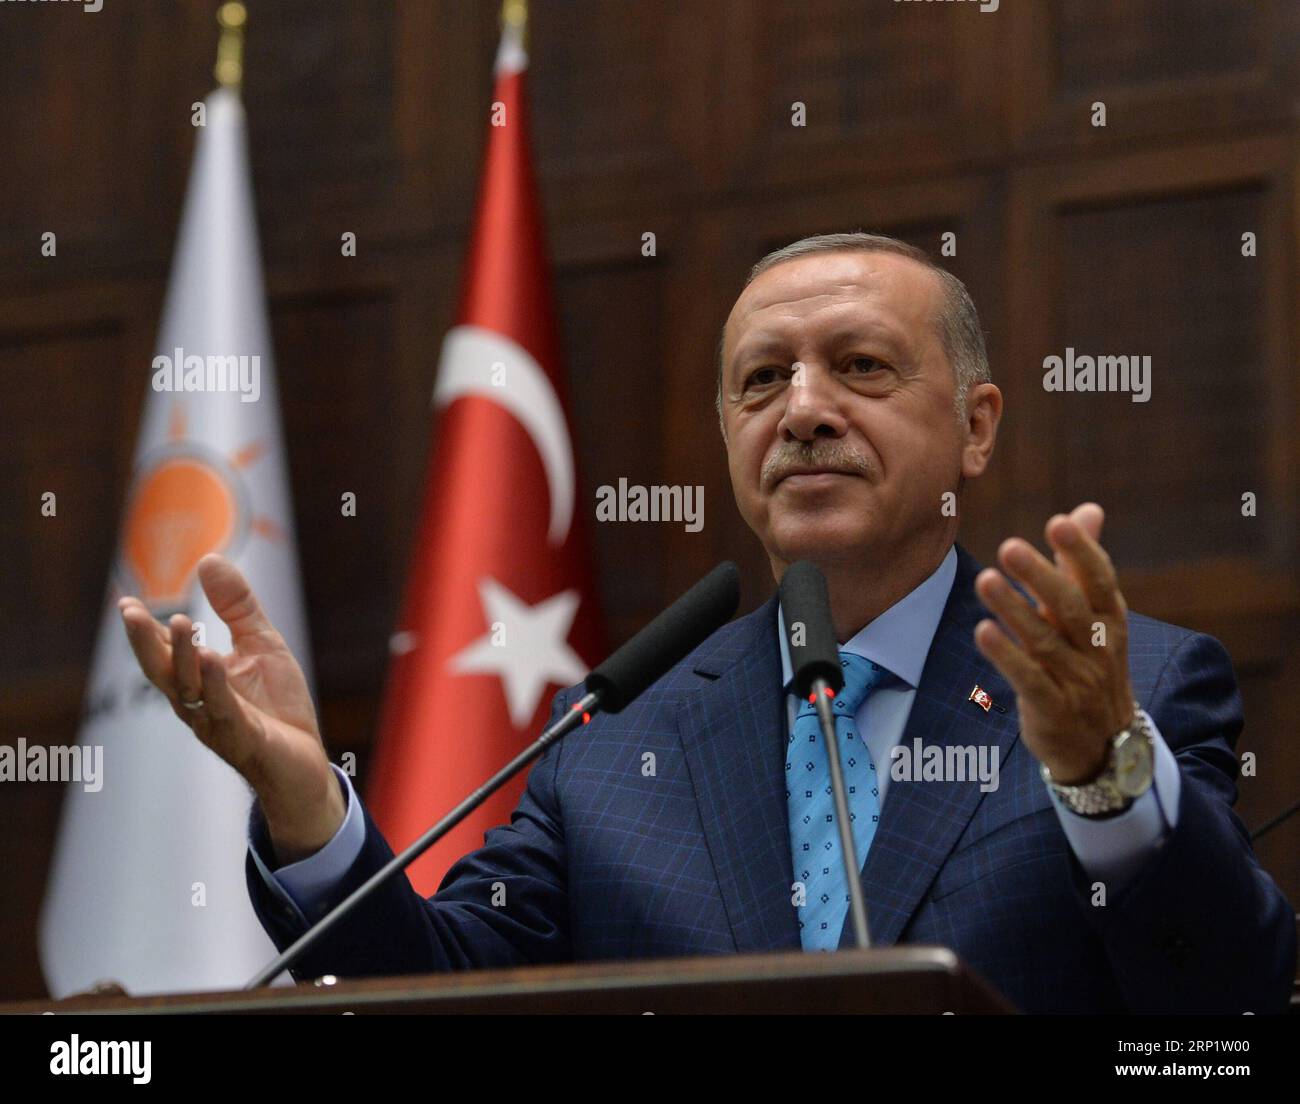 (180724) -- ANKARA, 24. Juli 2018 -- der türkische Präsident Recep Tayyip Erdogan spricht vor dem türkischen parlament in Ankara, Türkei, 24. Juli 2018. Die Behandlung von Mesut Ozil, einem türkisch-deutschen Fußballstar, der für die deutsche Nationalmannschaft spielt, sei rassistisch und inakzeptabel, sagte Erdogan am Dienstag nach Ozils Ausscheiden aus der deutschen Mannschaft. TÜRKEI-ANKARA-ERDOGAN-PARLAMENT MustafaxKaya PUBLICATIONxNOTxINxCHN Stockfoto